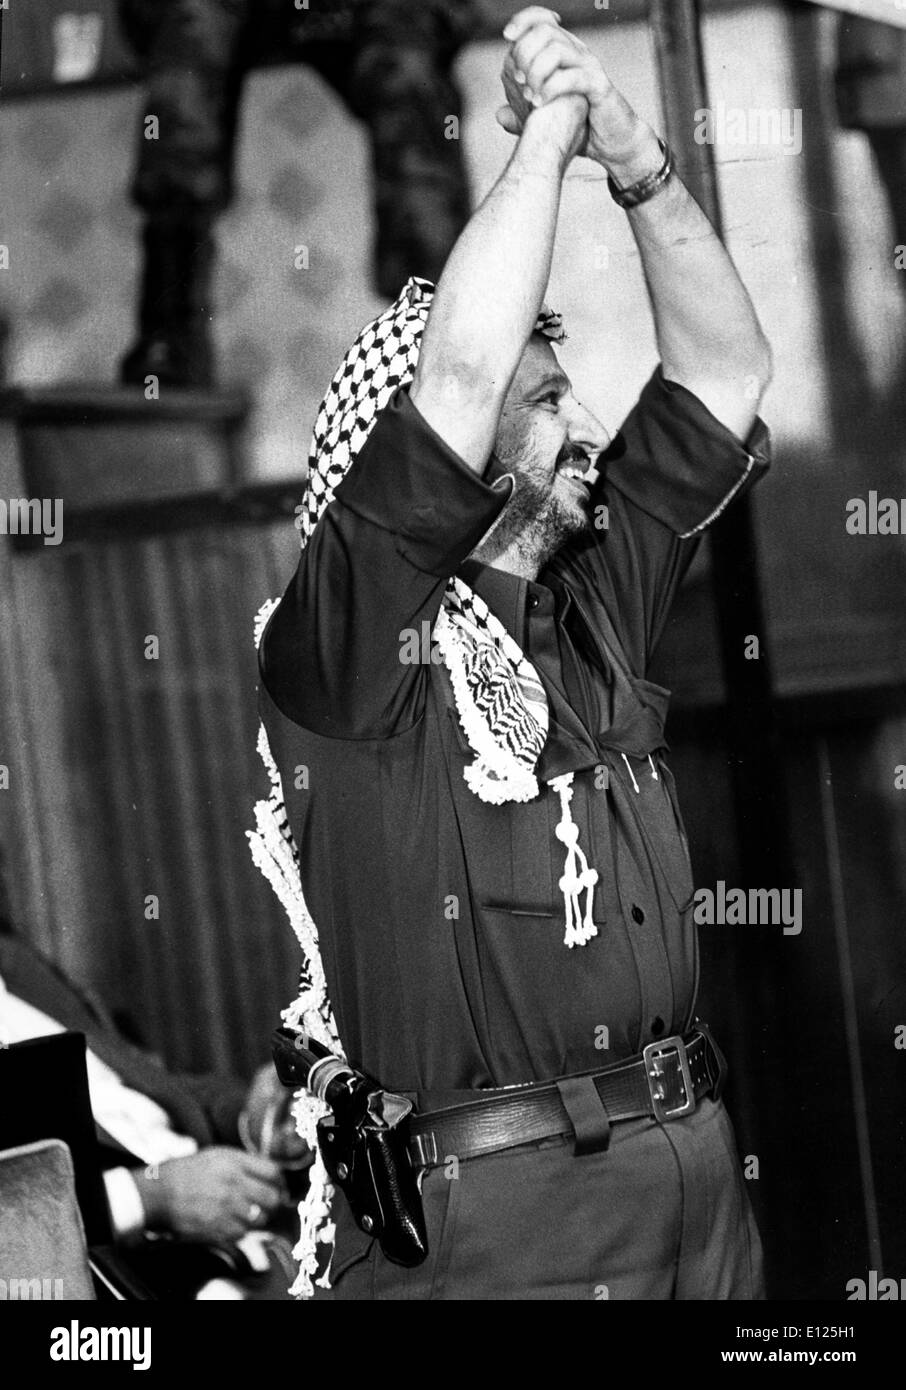 11. November 2004; Paris, Frankreich, USA; Yasser Arafat, der triumphierend im Rampenlicht der Welt seines Volkes Notlage gezwungen, aber versäumt, seine lebenslange Suche nach palästinensischen Staatlichkeit zu erreichen, starb heute im Alter von 75 in einem Krankenhaus außerhalb von Paris. Im Bild: 27. Oktober 2004; Kampala, UGANDA; (Datei Foto. Unbekanntes Datum) YASSER ARAFAT anerkennt Applaus nach seiner Ansprache an die afrikanischen Staatschefs. (Bild Kredit: KEYSTONE Bilder USA/ZUMAPRESS.com) Stockfoto